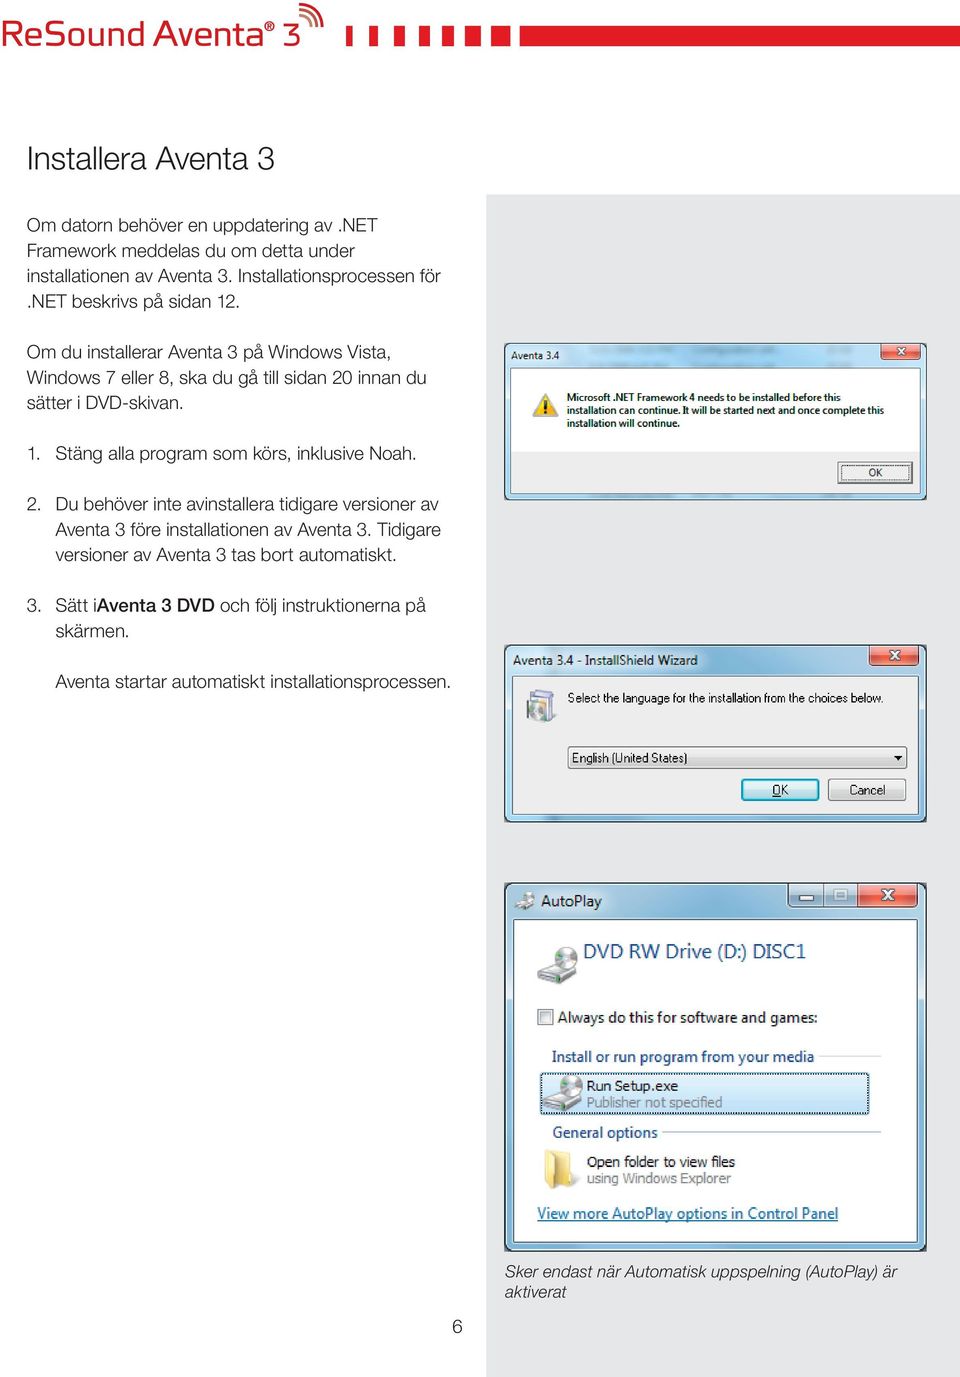 2. Du behöver inte avinstallera tidigare versioner av Aventa 3 före installationen av Aventa 3. Tidigare versioner av Aventa 3 tas bort automatiskt. 3. Sätt iaventa 3 DVD och följ instruktionerna på skärmen.